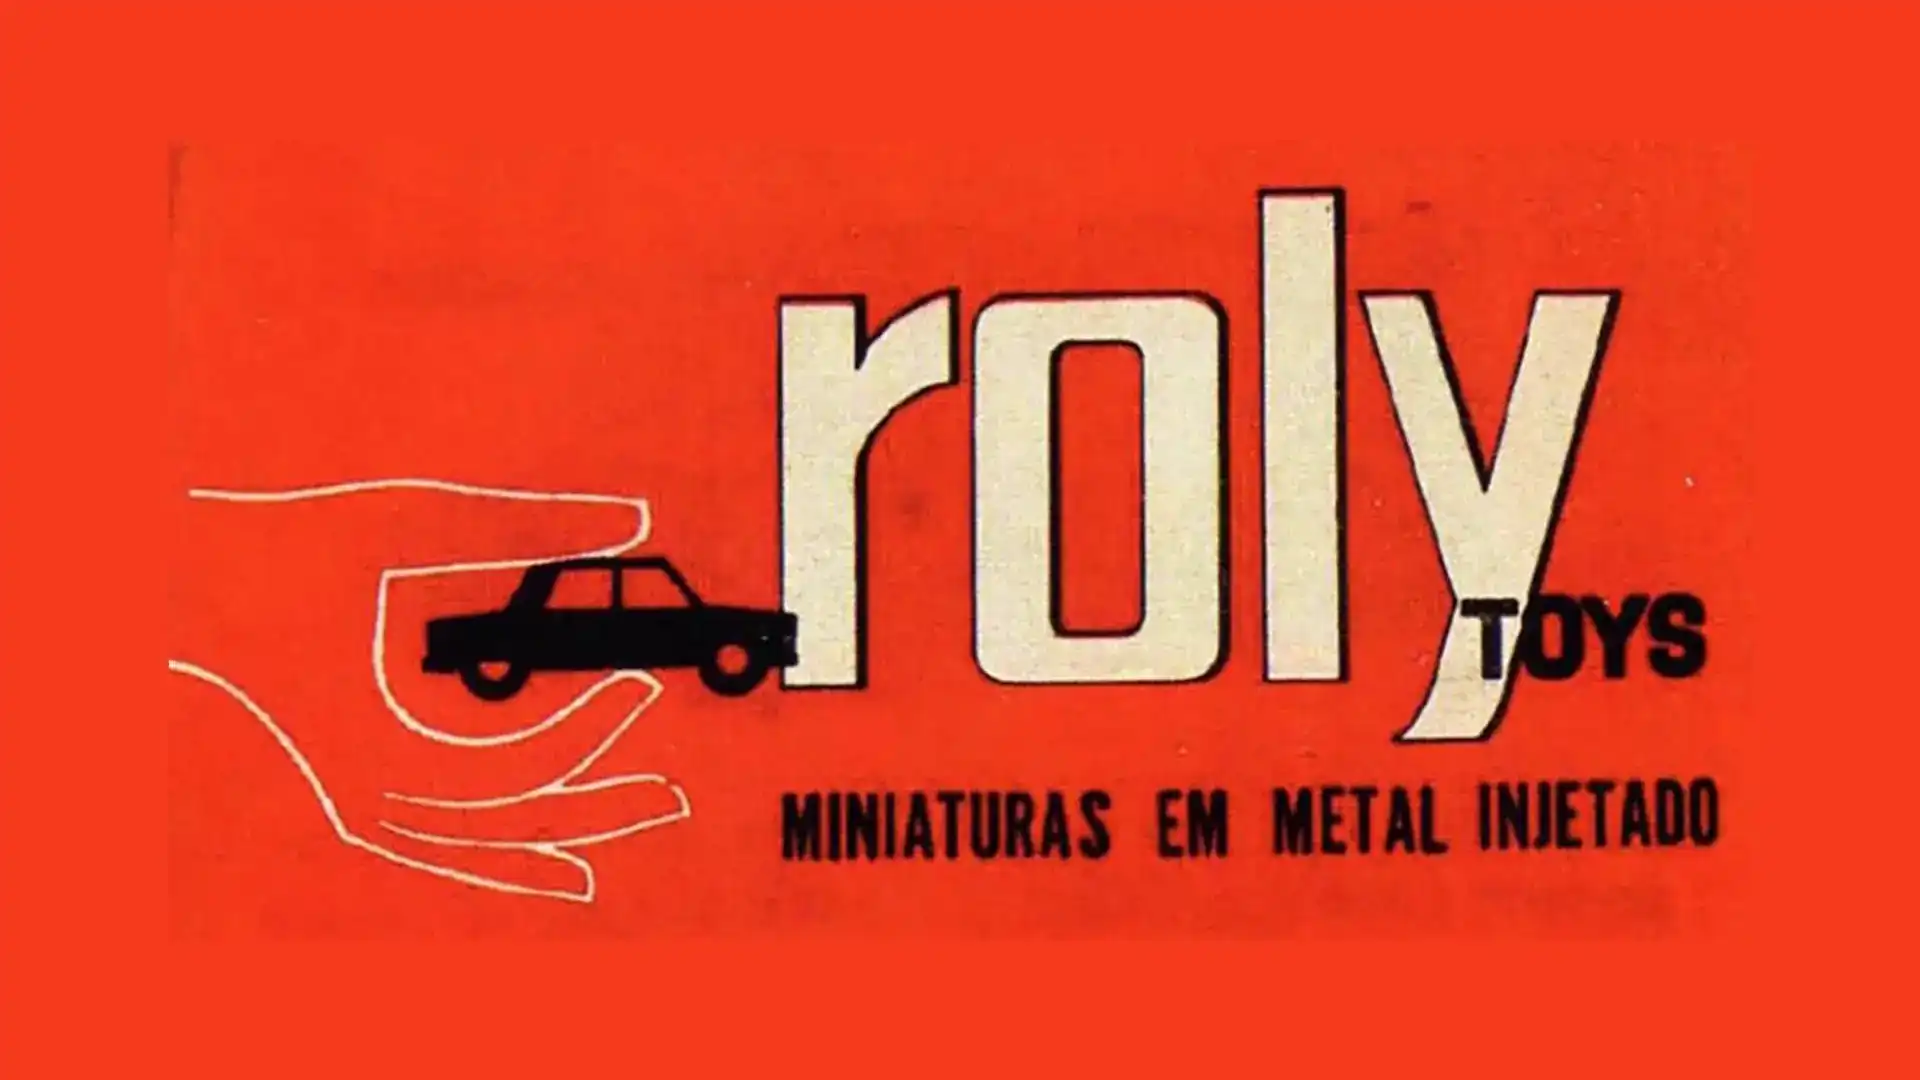 História da Roly Toys